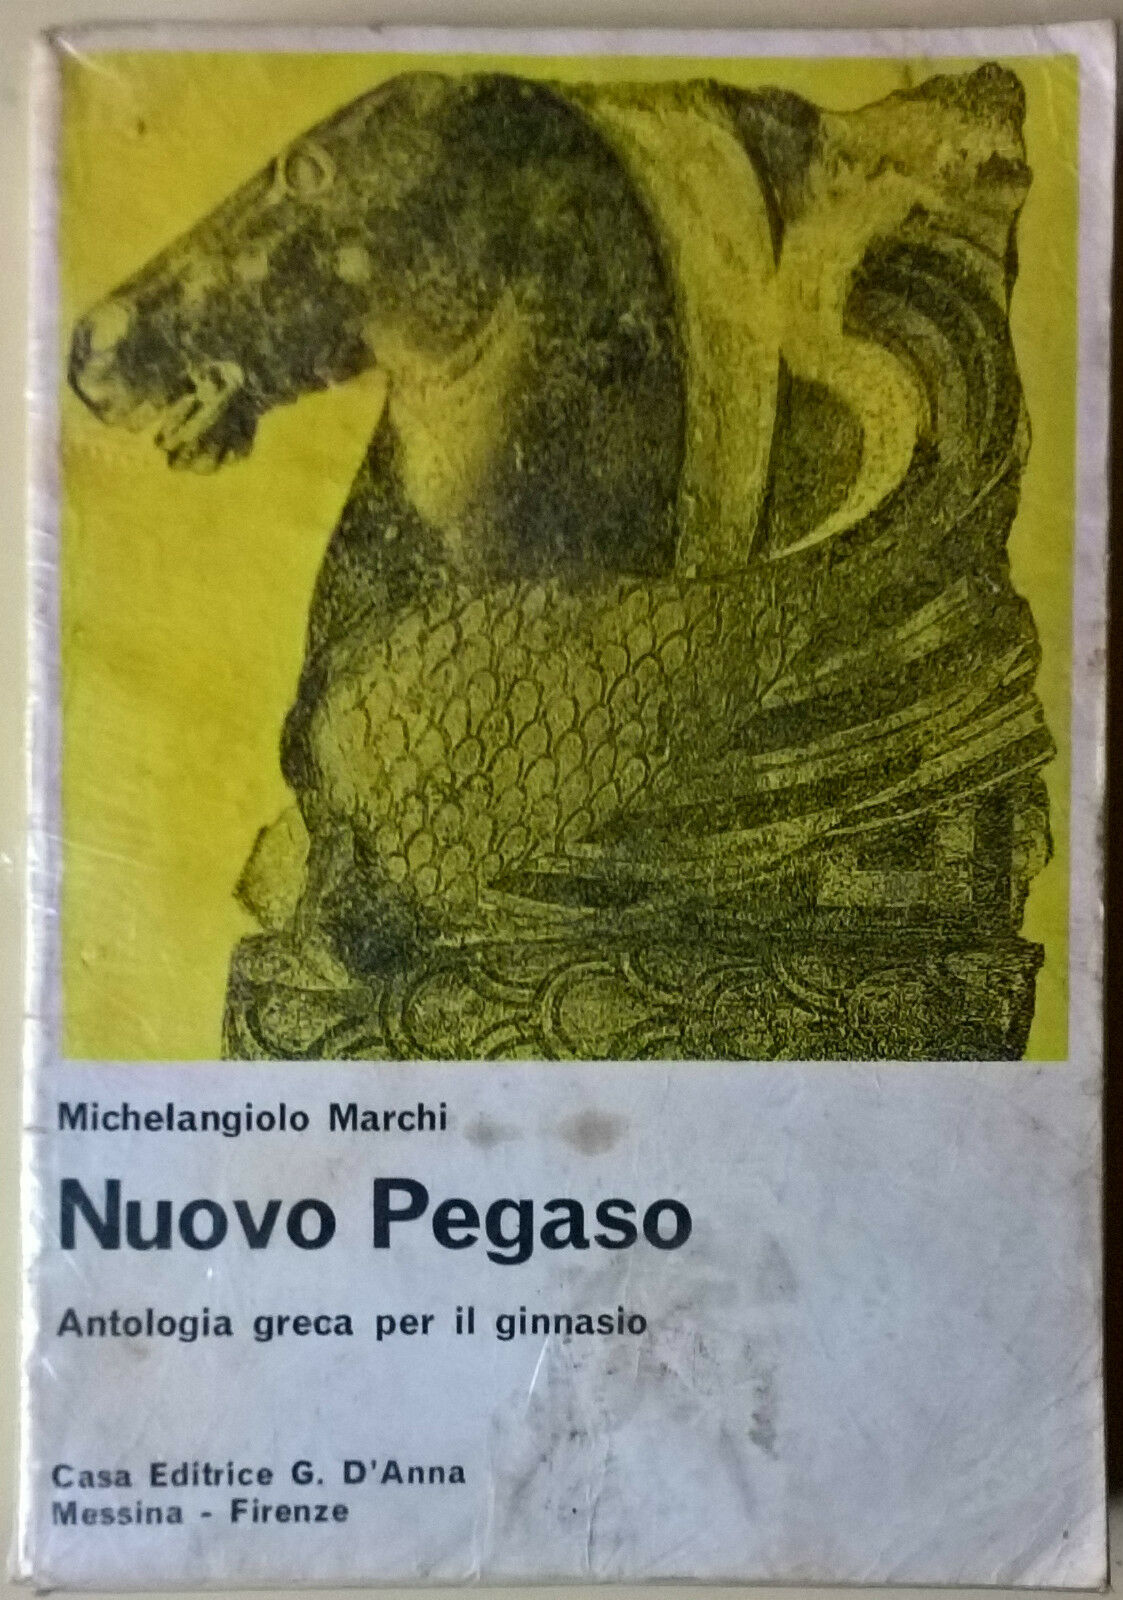 Nuovo Pegaso. Antologia greca per il ginnasio - Marchi - 1984, G. D'Anna - L   libro usato